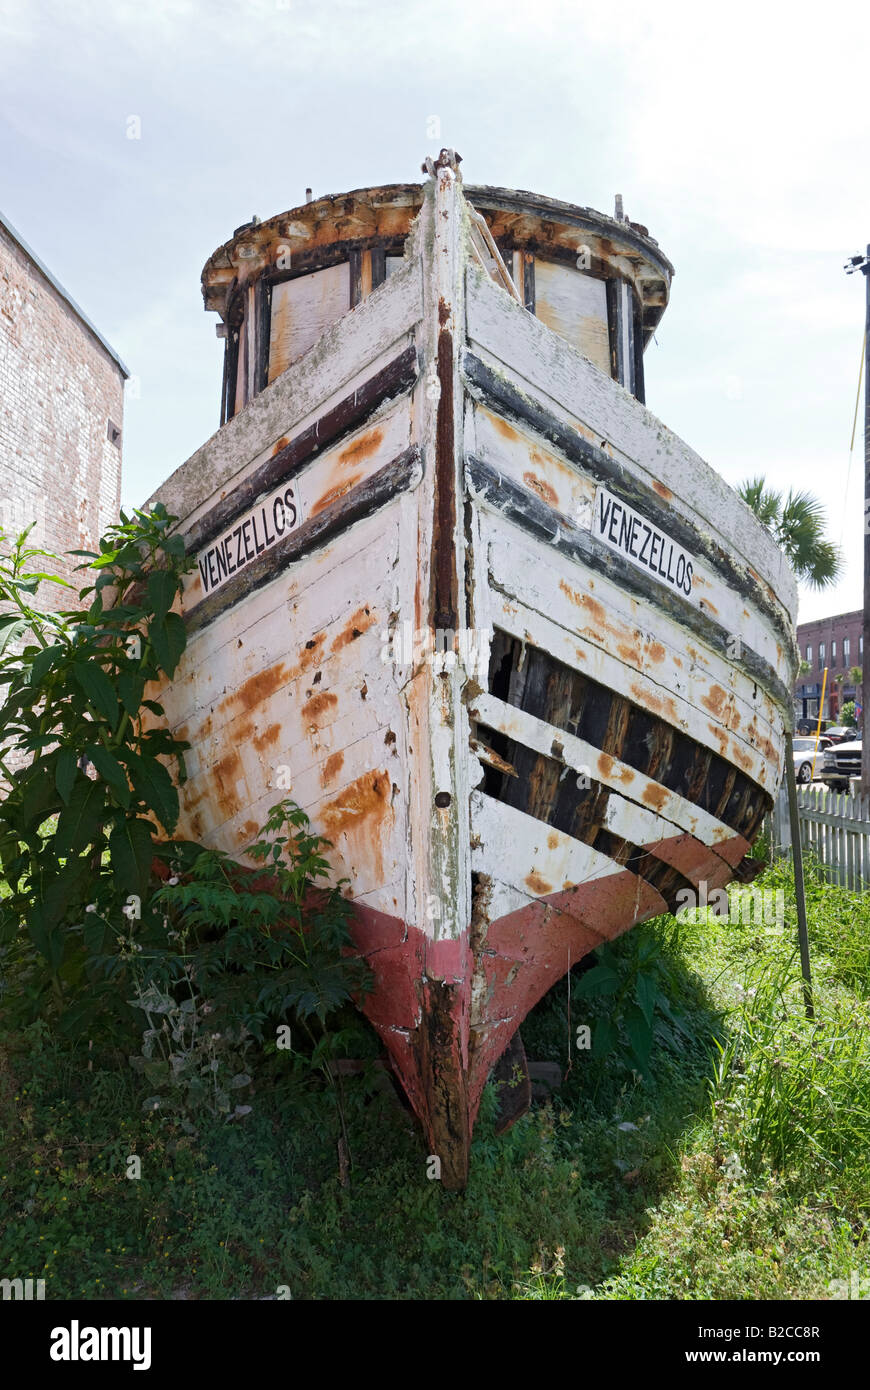 Camarones griegos originales barco Venezellos muestra en Florida Apalachicola Foto de stock